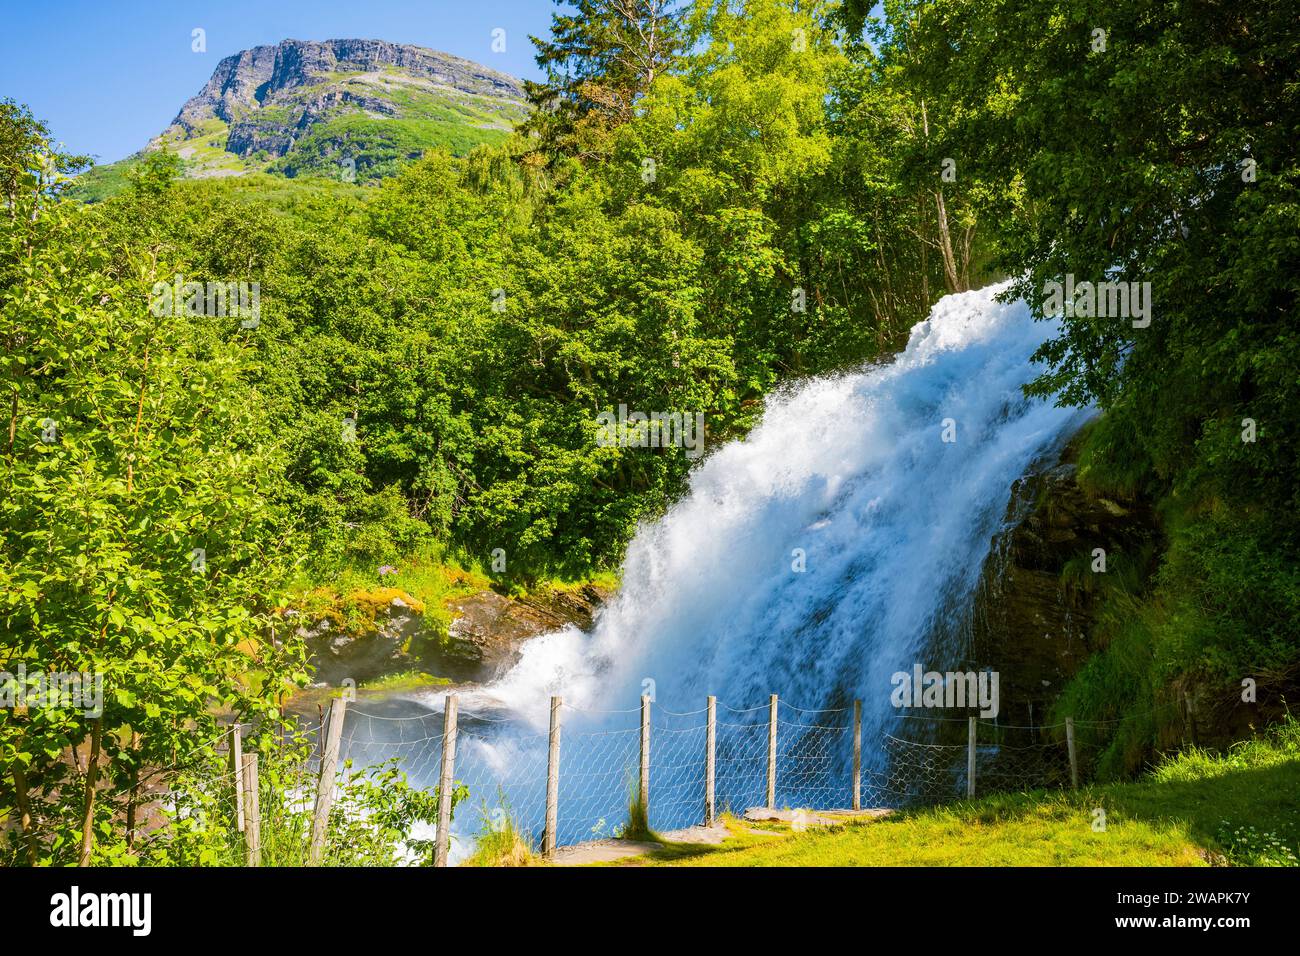 Una piccola cascata di nome Kleivafossen situata vicino a un campeggio nel piccolo villaggio e popolare località di viaggio Geiranger, Norvegia, un patrimonio mondiale dell'UNESCO Foto Stock